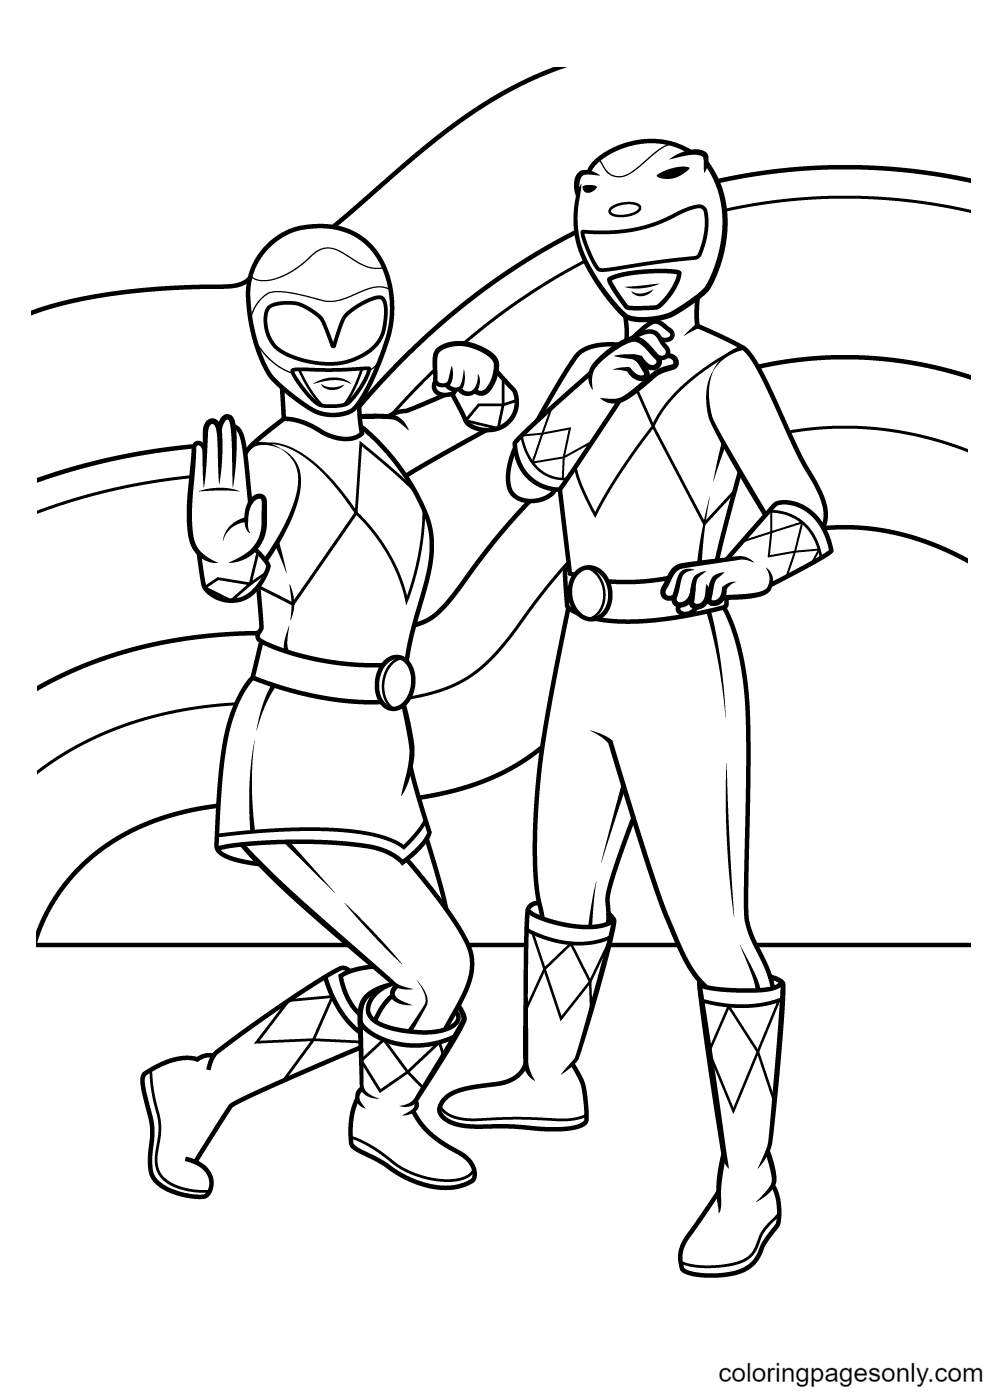 Ranger rose et Ranger jaune des Power Rangers